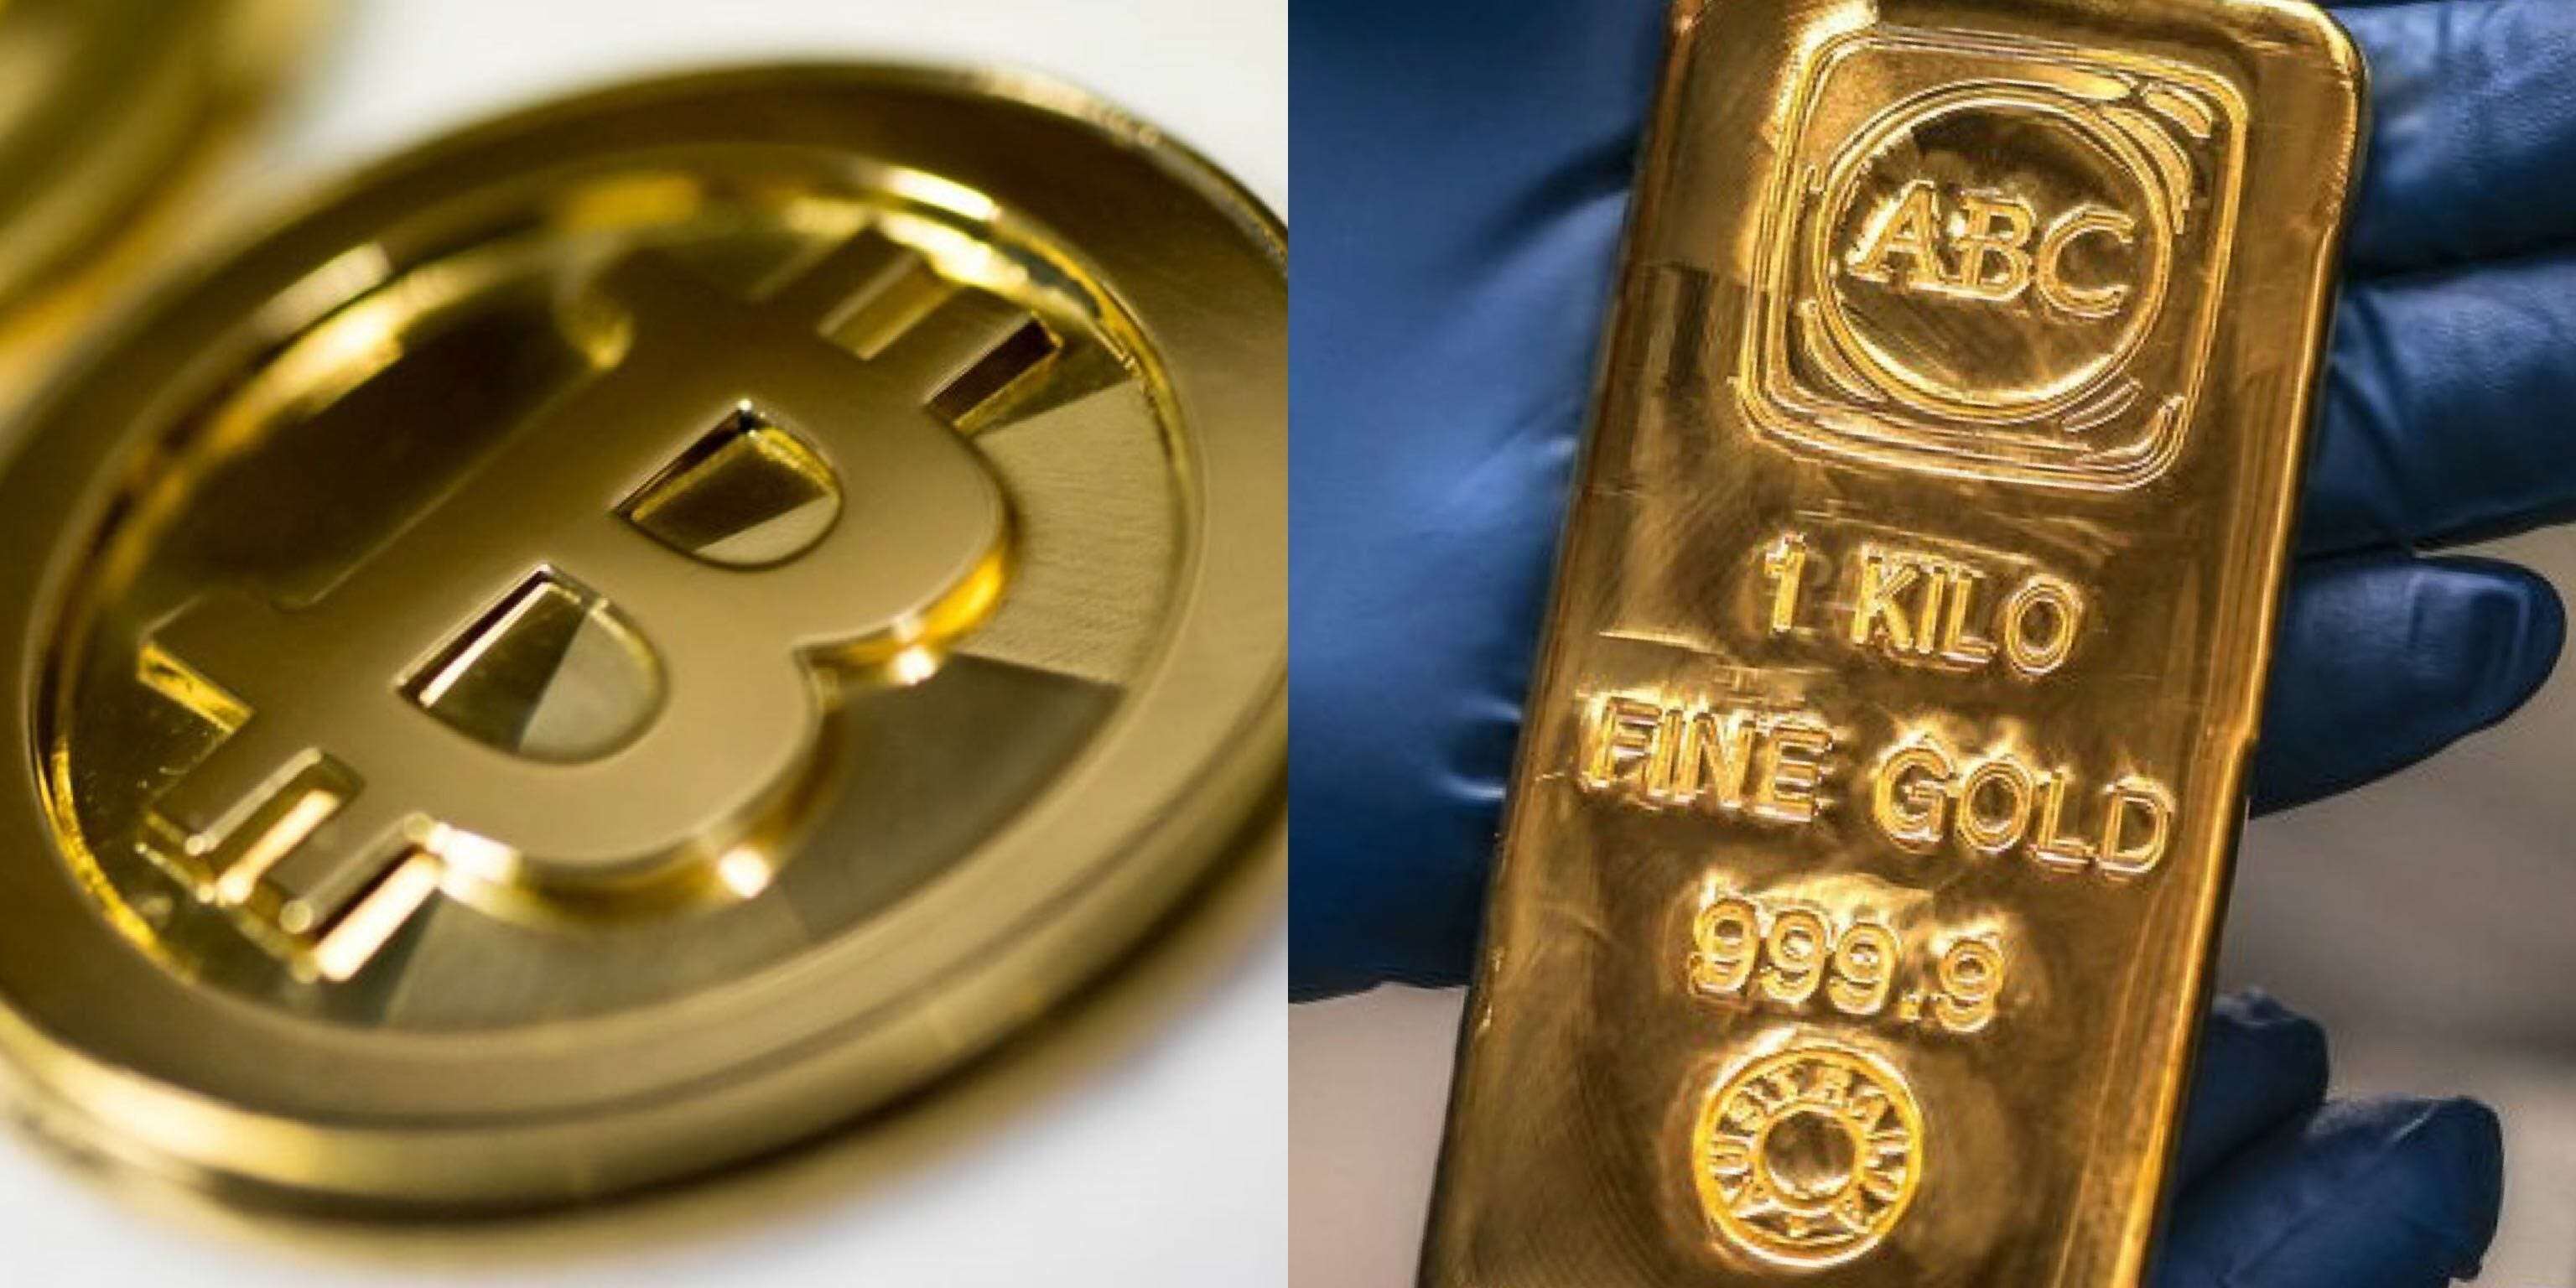 antony lewis bitcoin kereskedelmi kötet a bitcoin számára